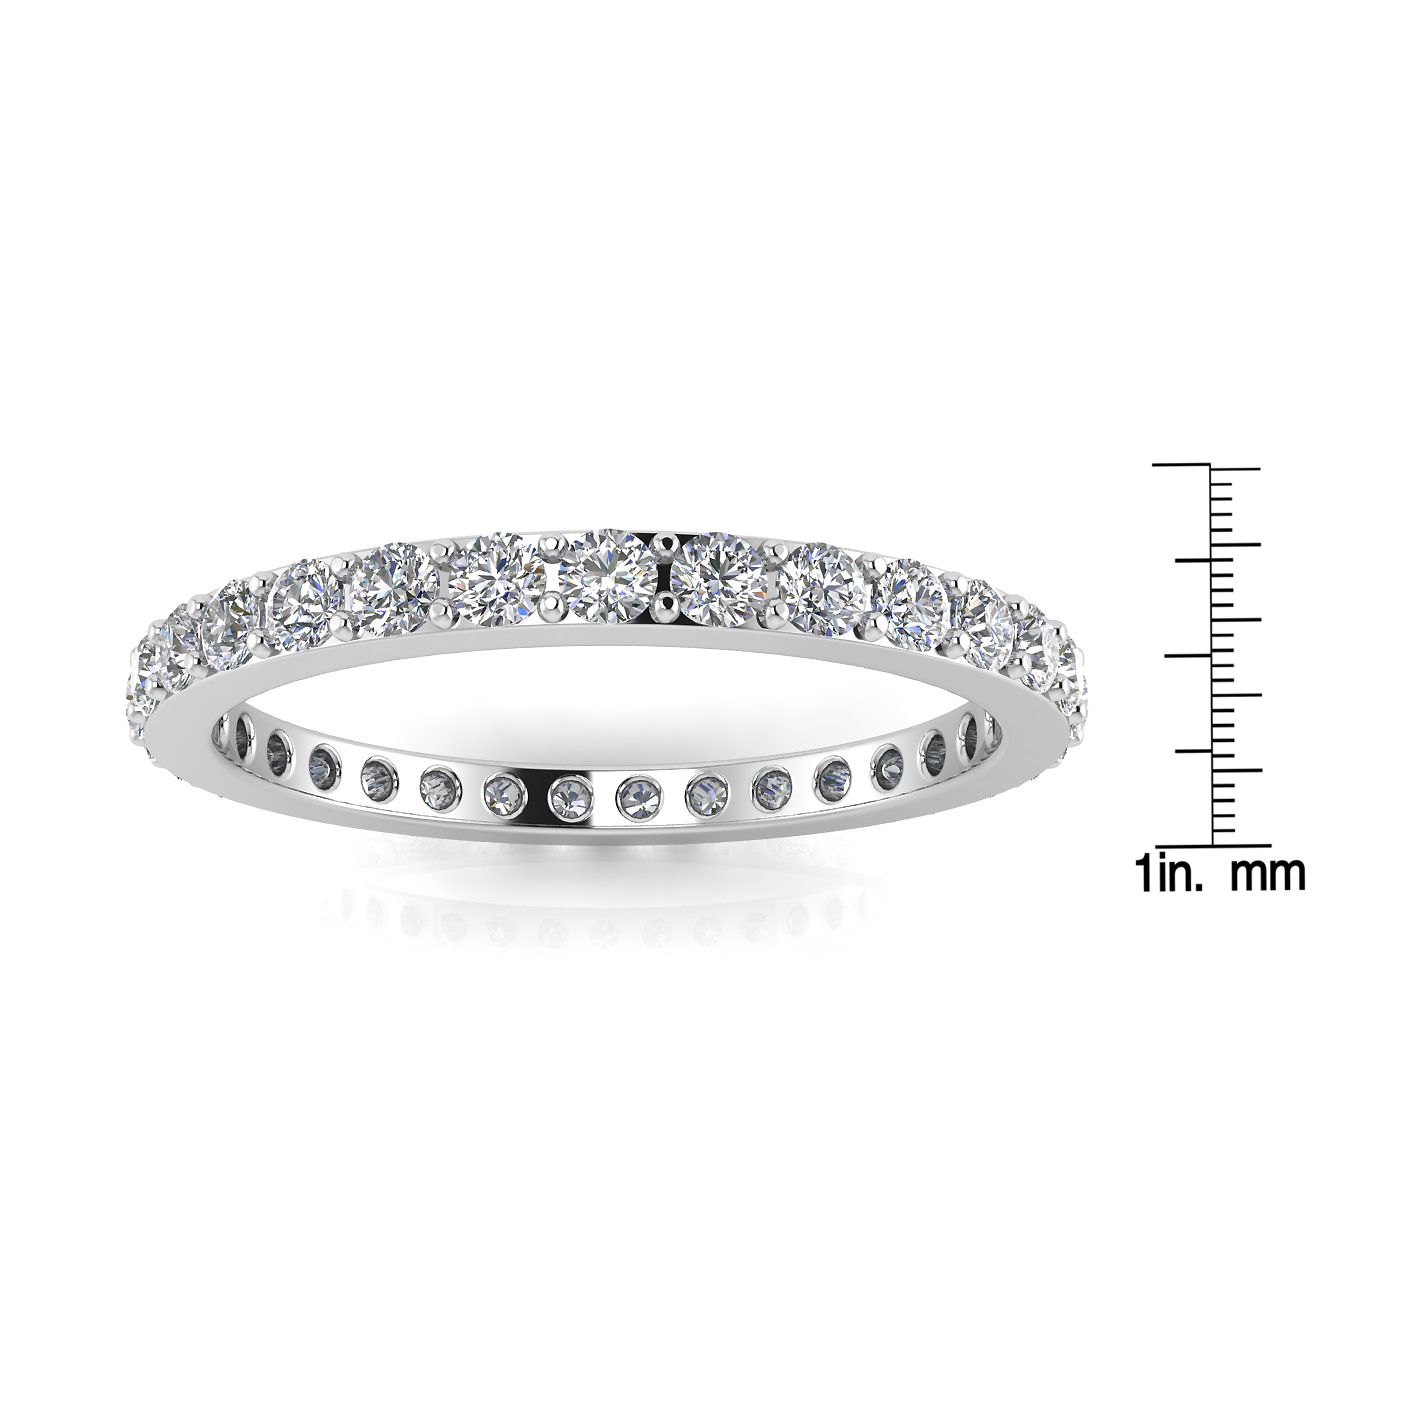 แหวนไพลินเจียระไนเพชรกลมตั้ง Eternity Ring ในทองคำขาว 18k (0.51 กะรัต Tw.) ขนาดแหวน 8.5